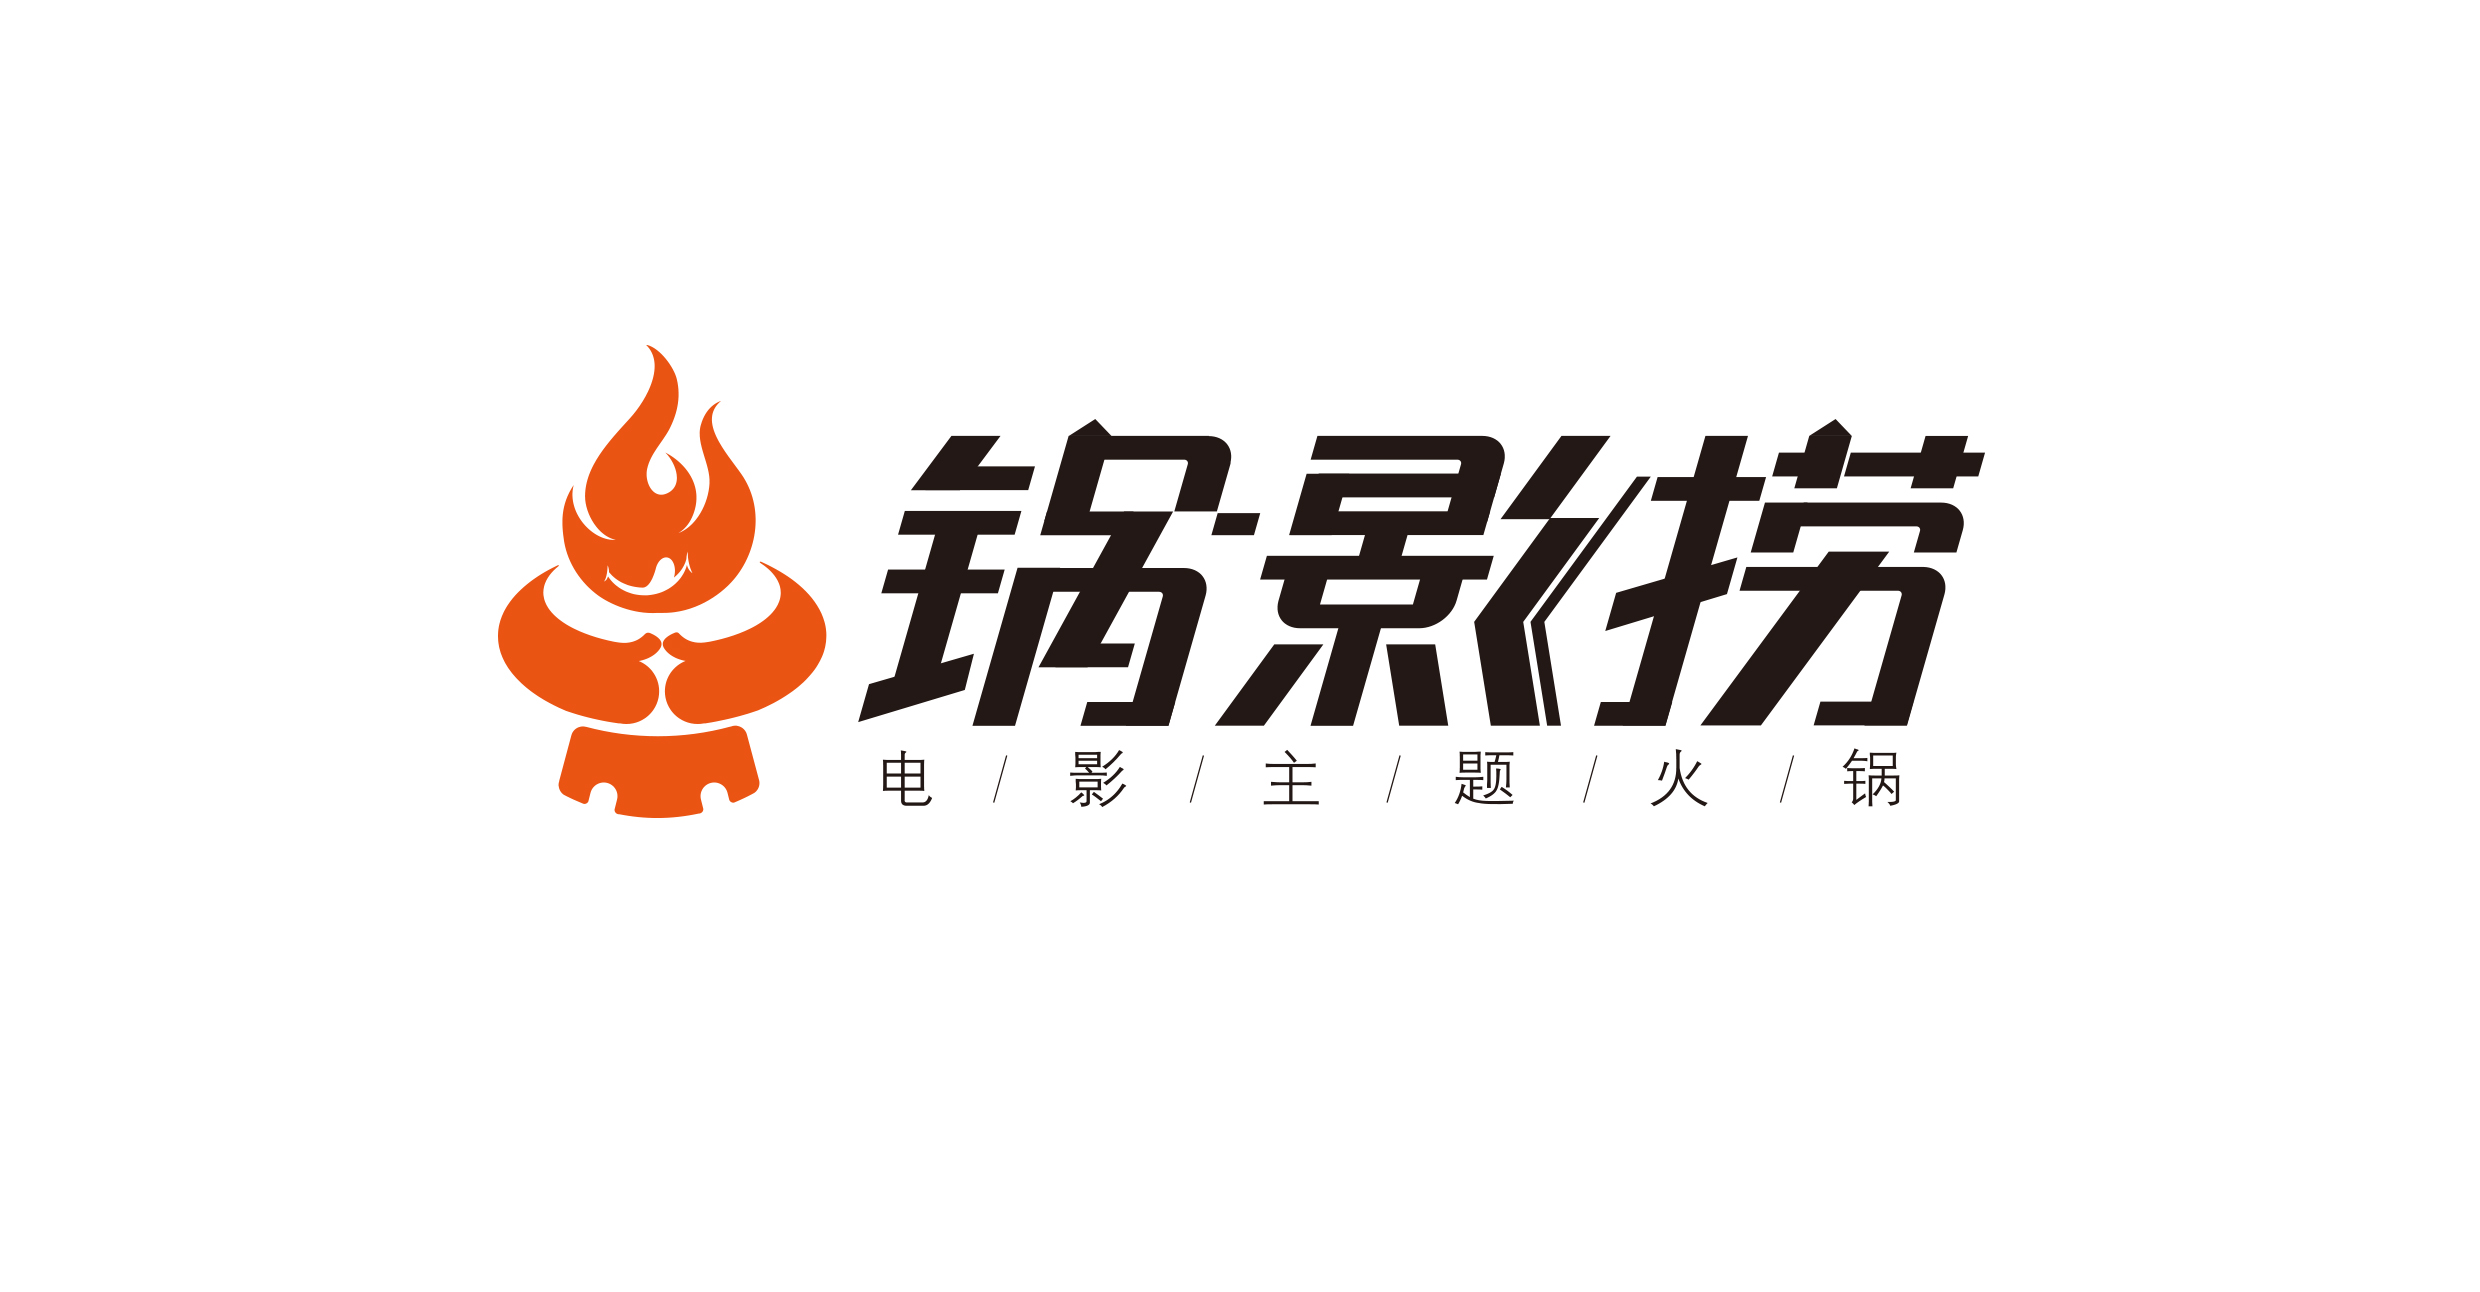 锅影捞 火锅店logo及字体设计